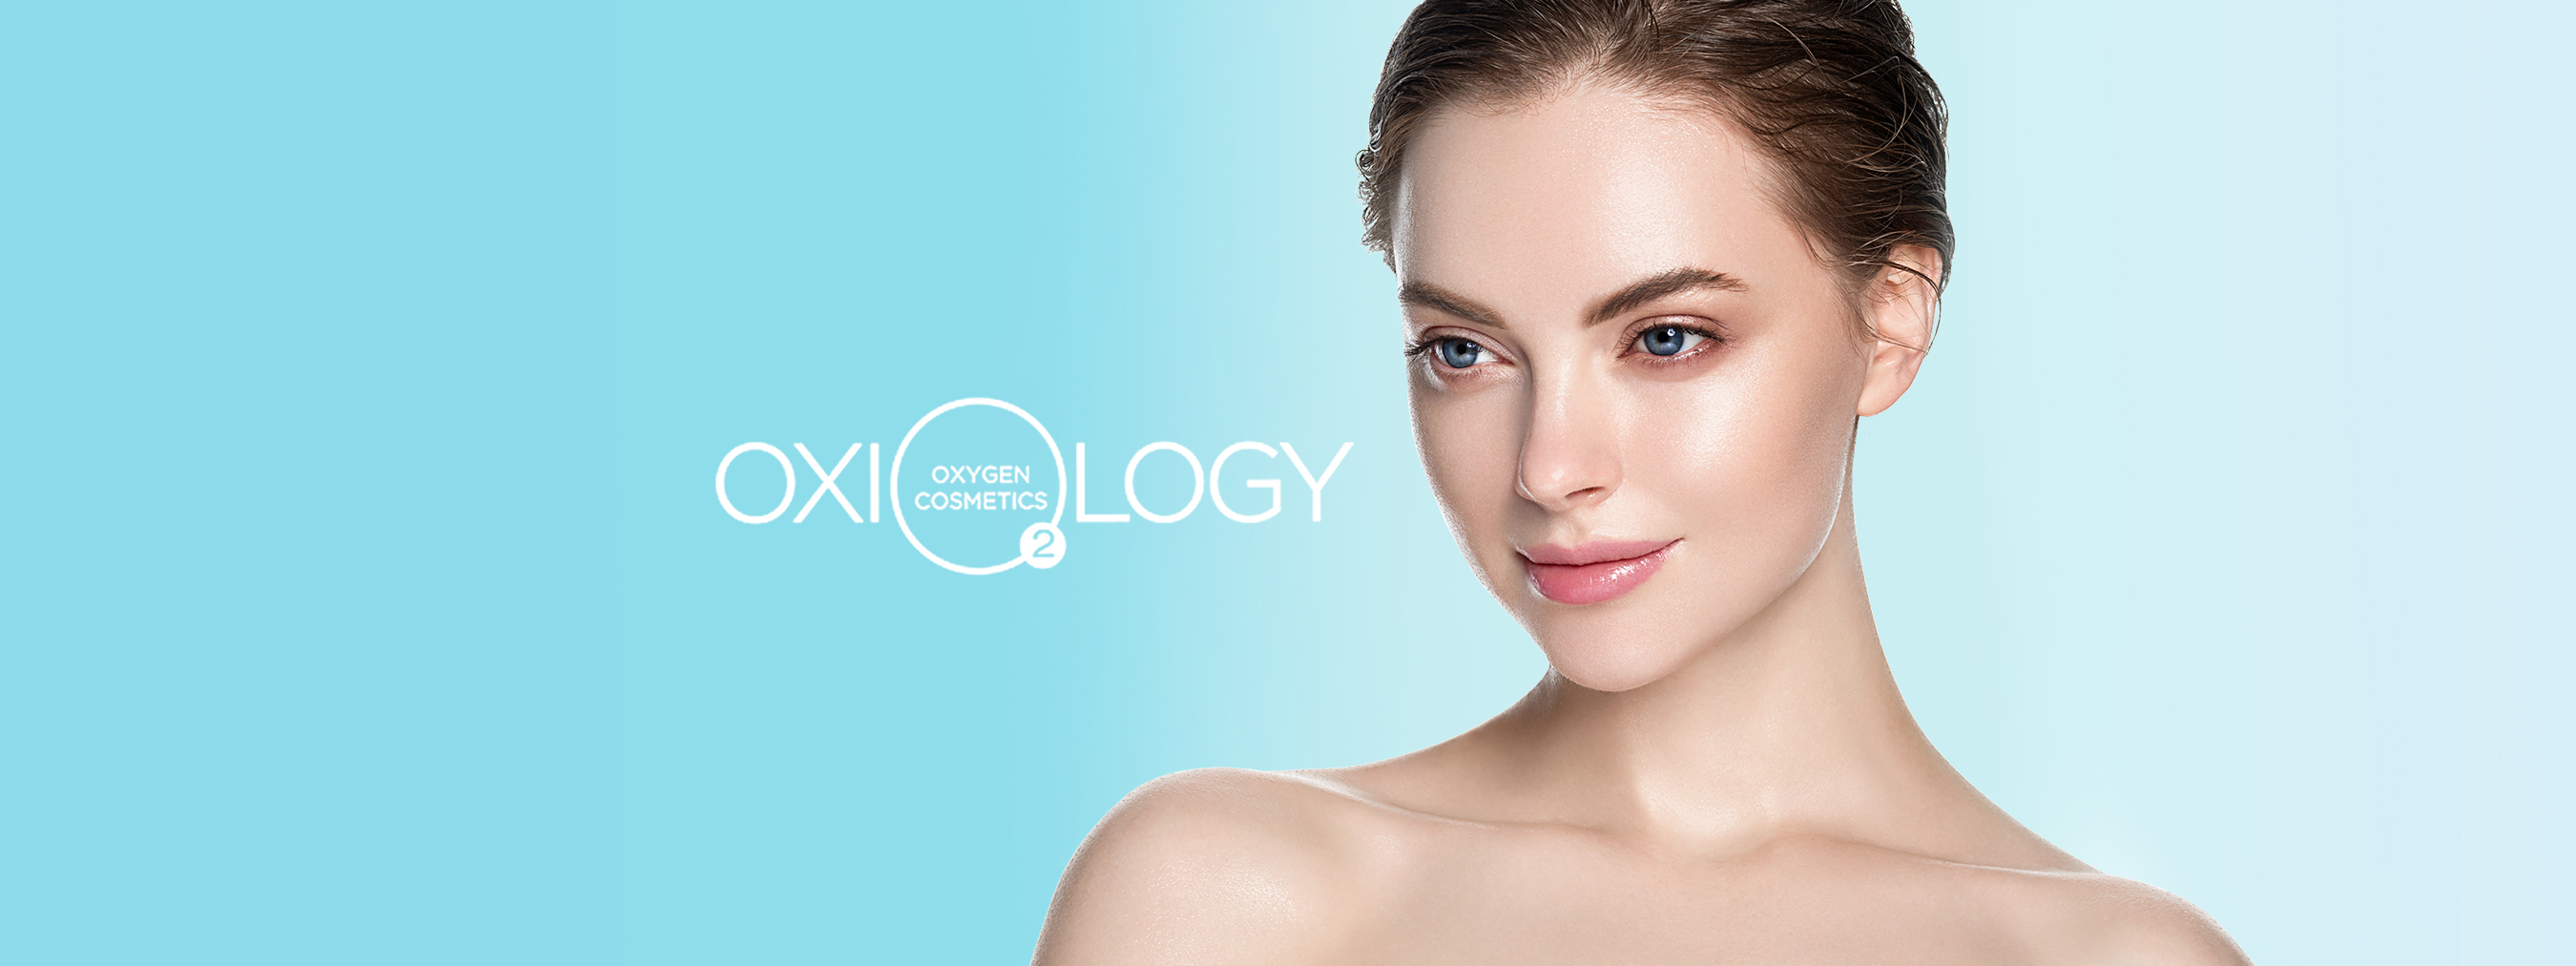 Создание бренда кислородной косметики Oxyology нового поколения